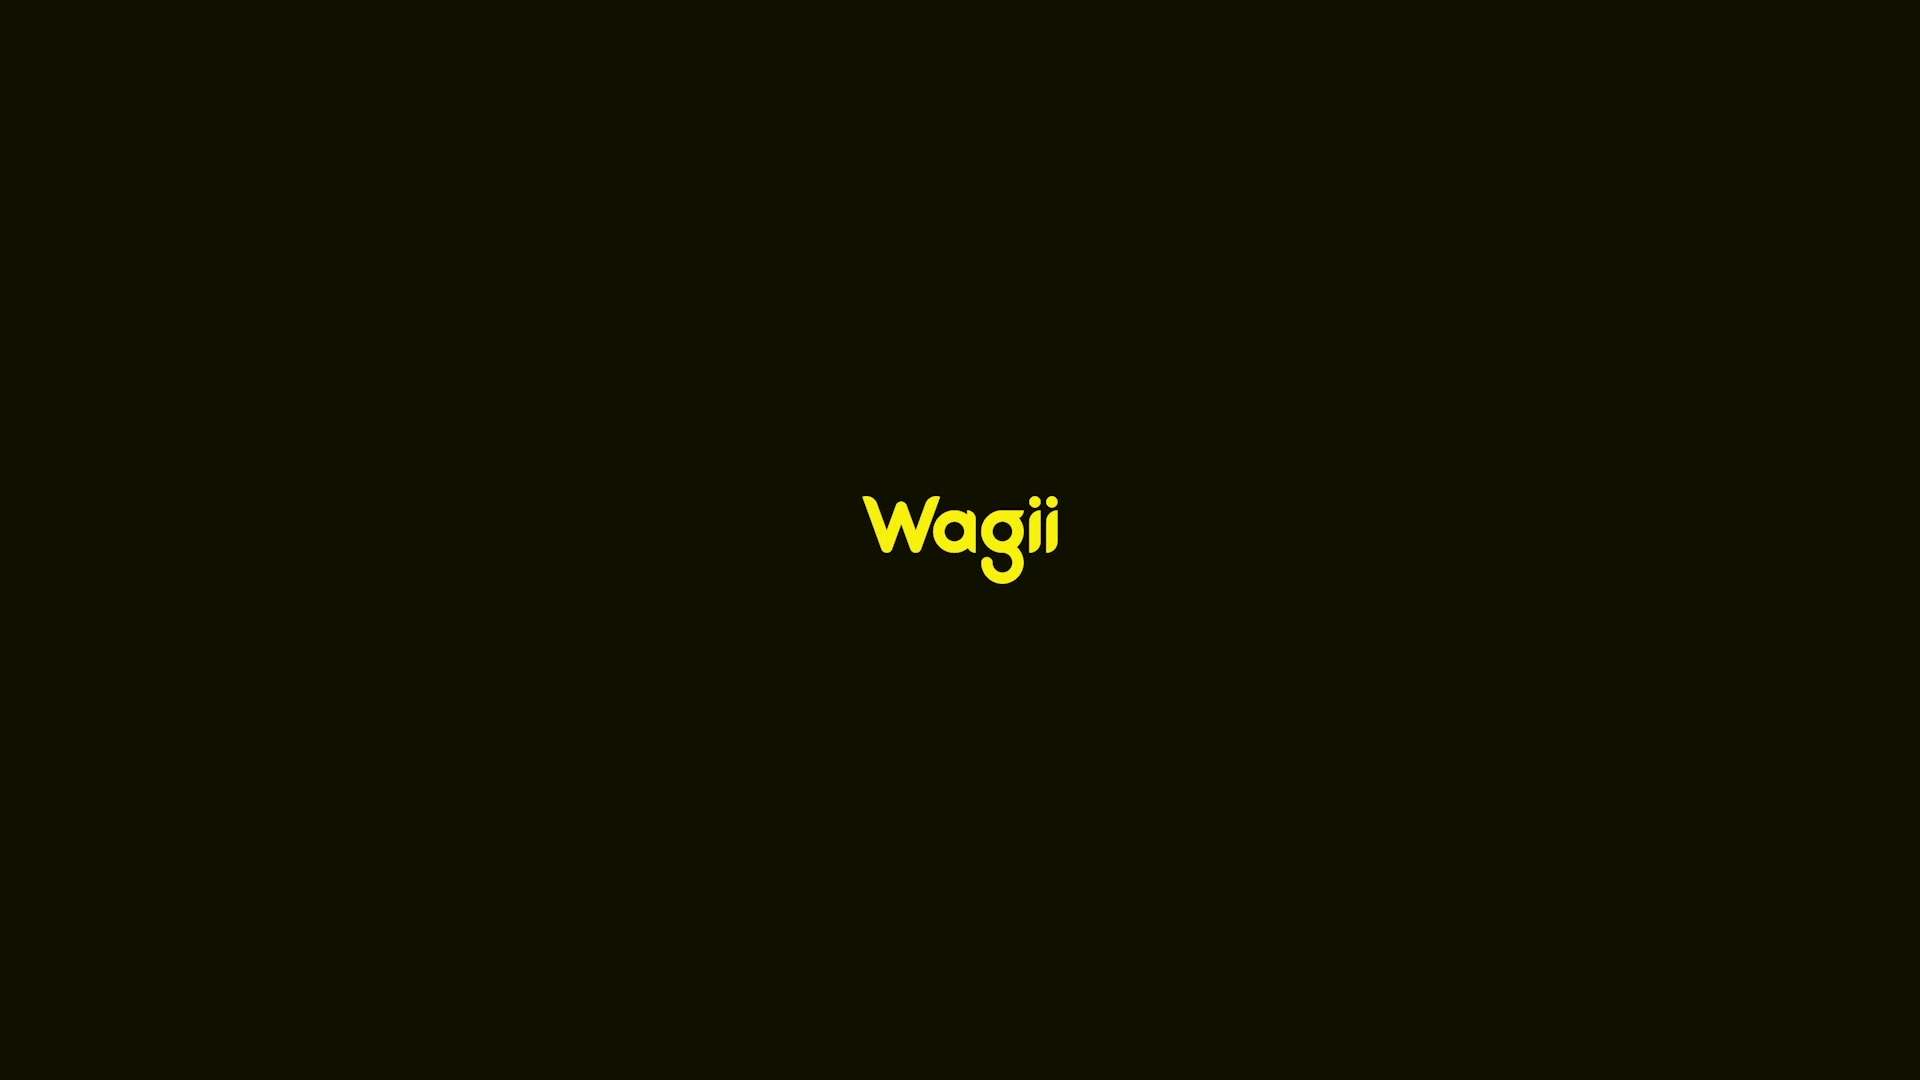 Wagii_ 智能眼镜 全球首发广告片